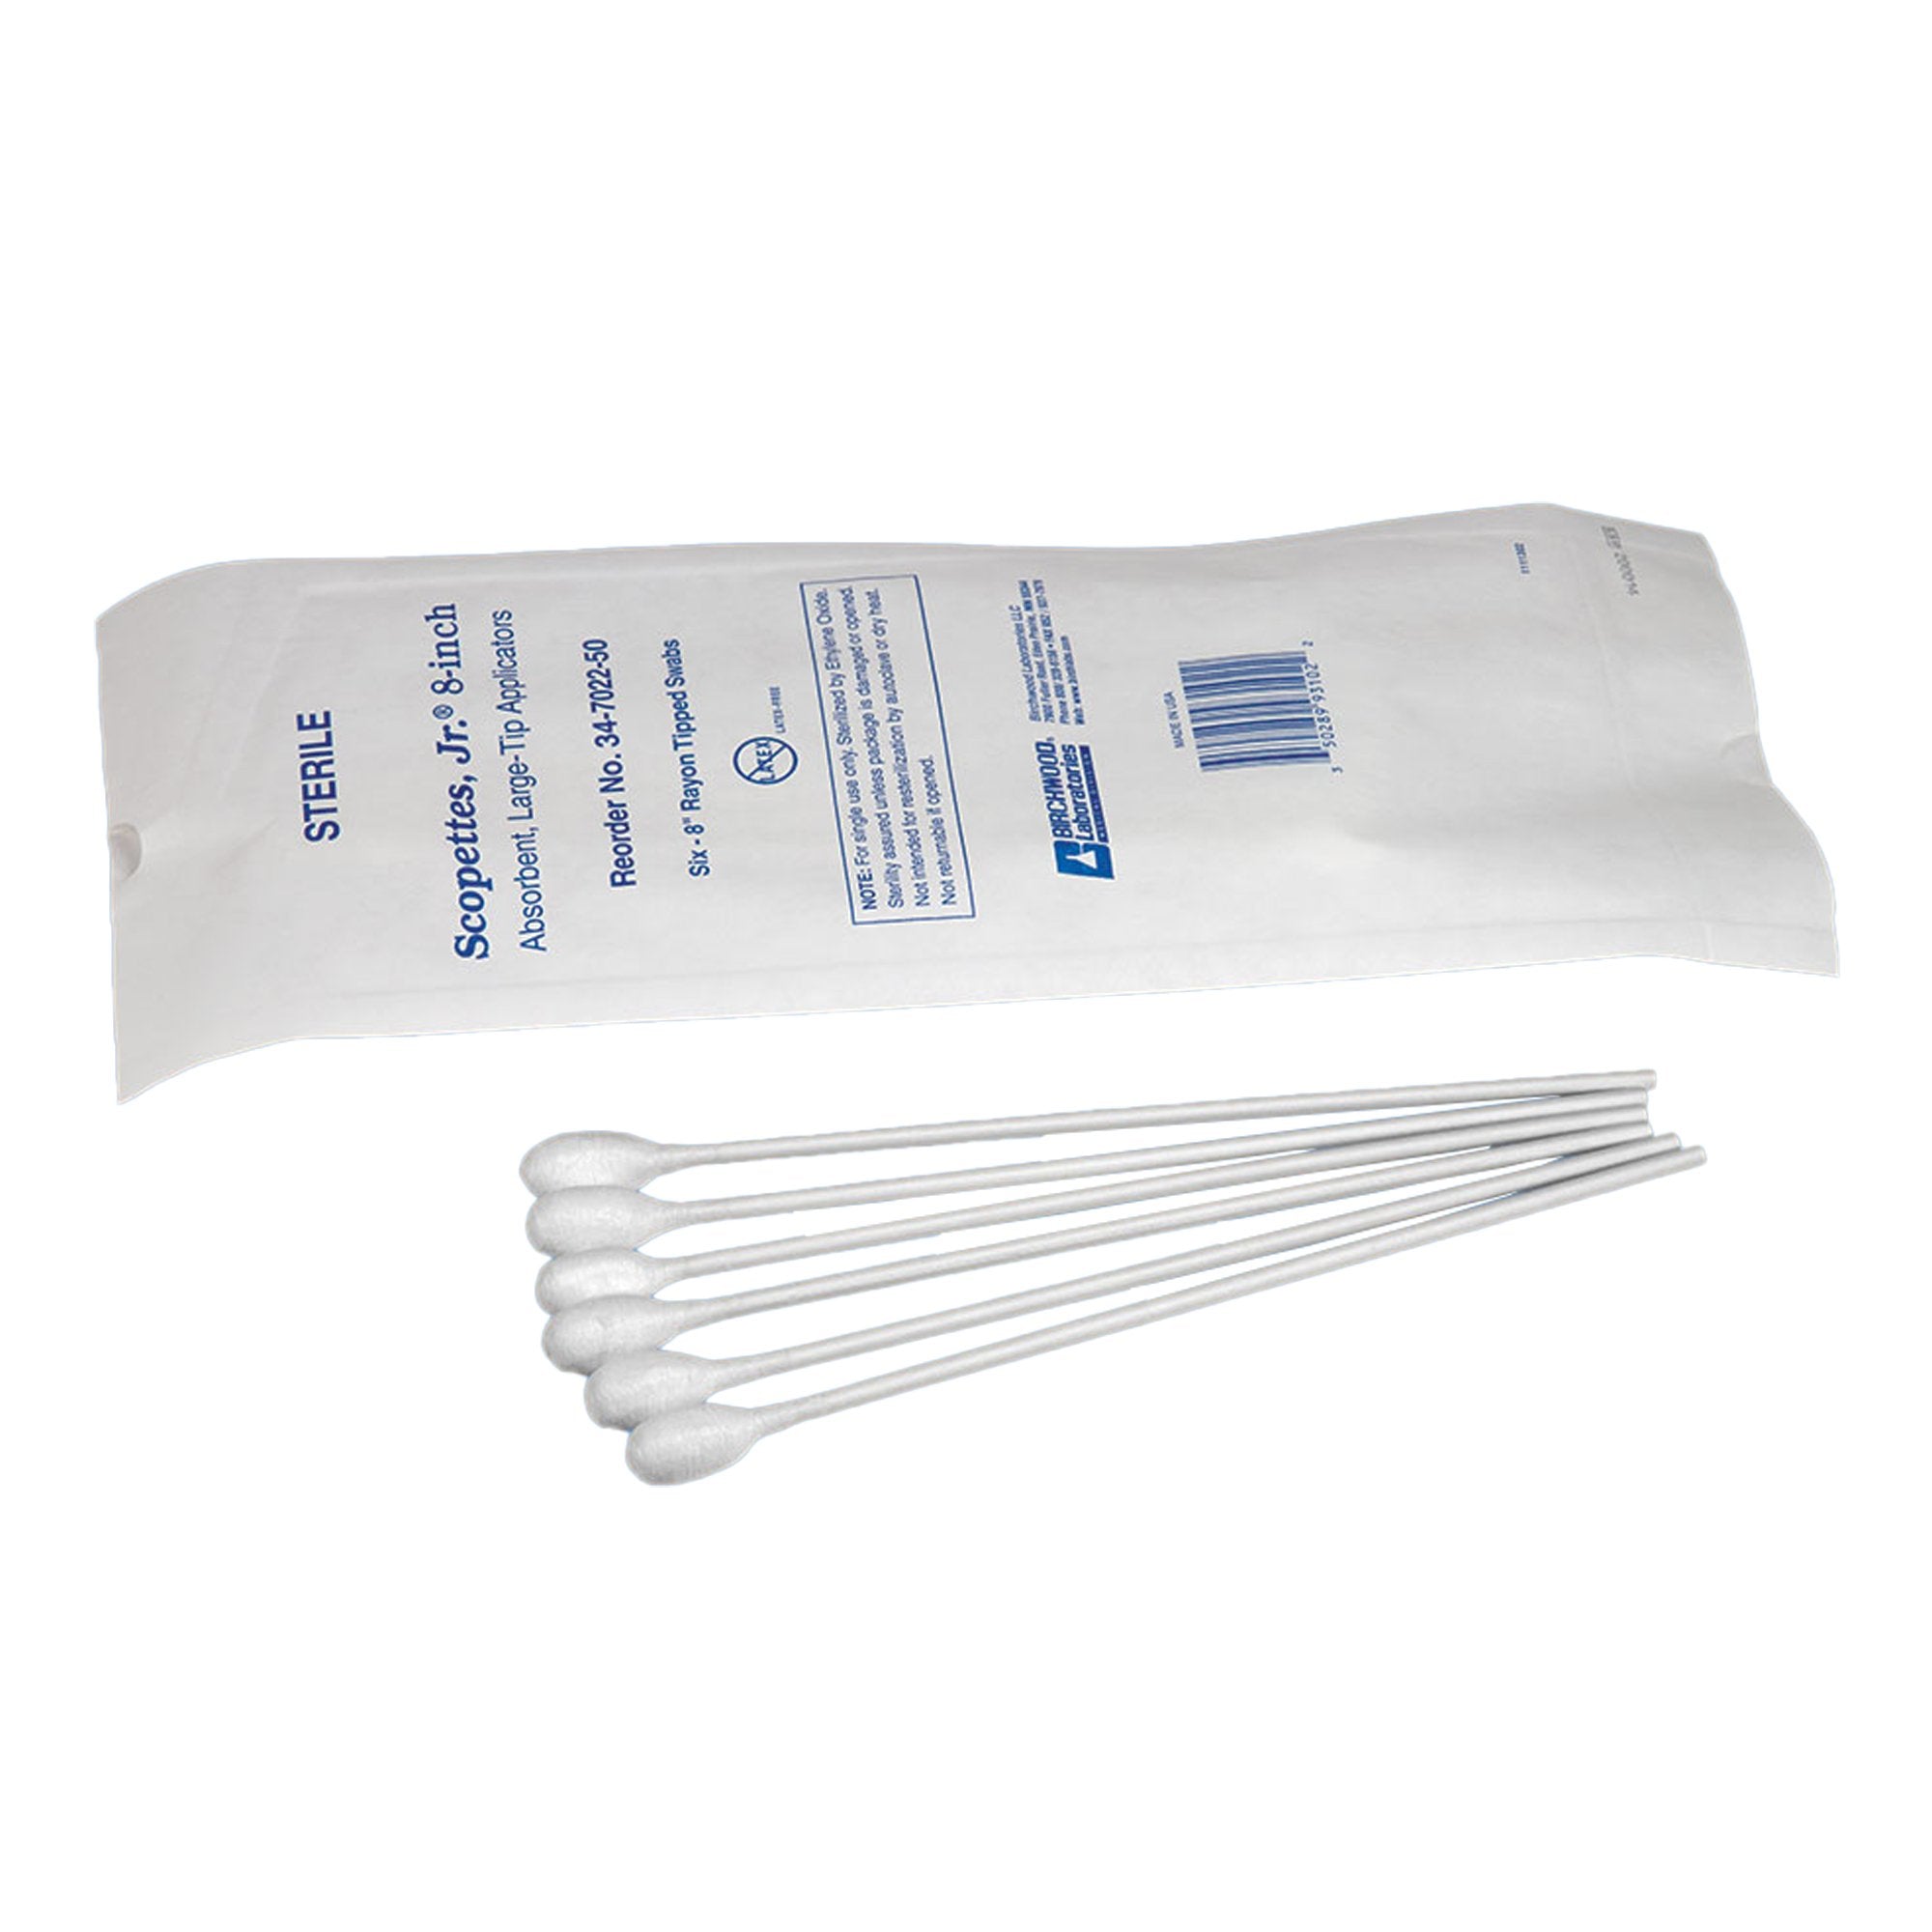 OB/GYN Swab Scopettes 8 Inch Length Sterile